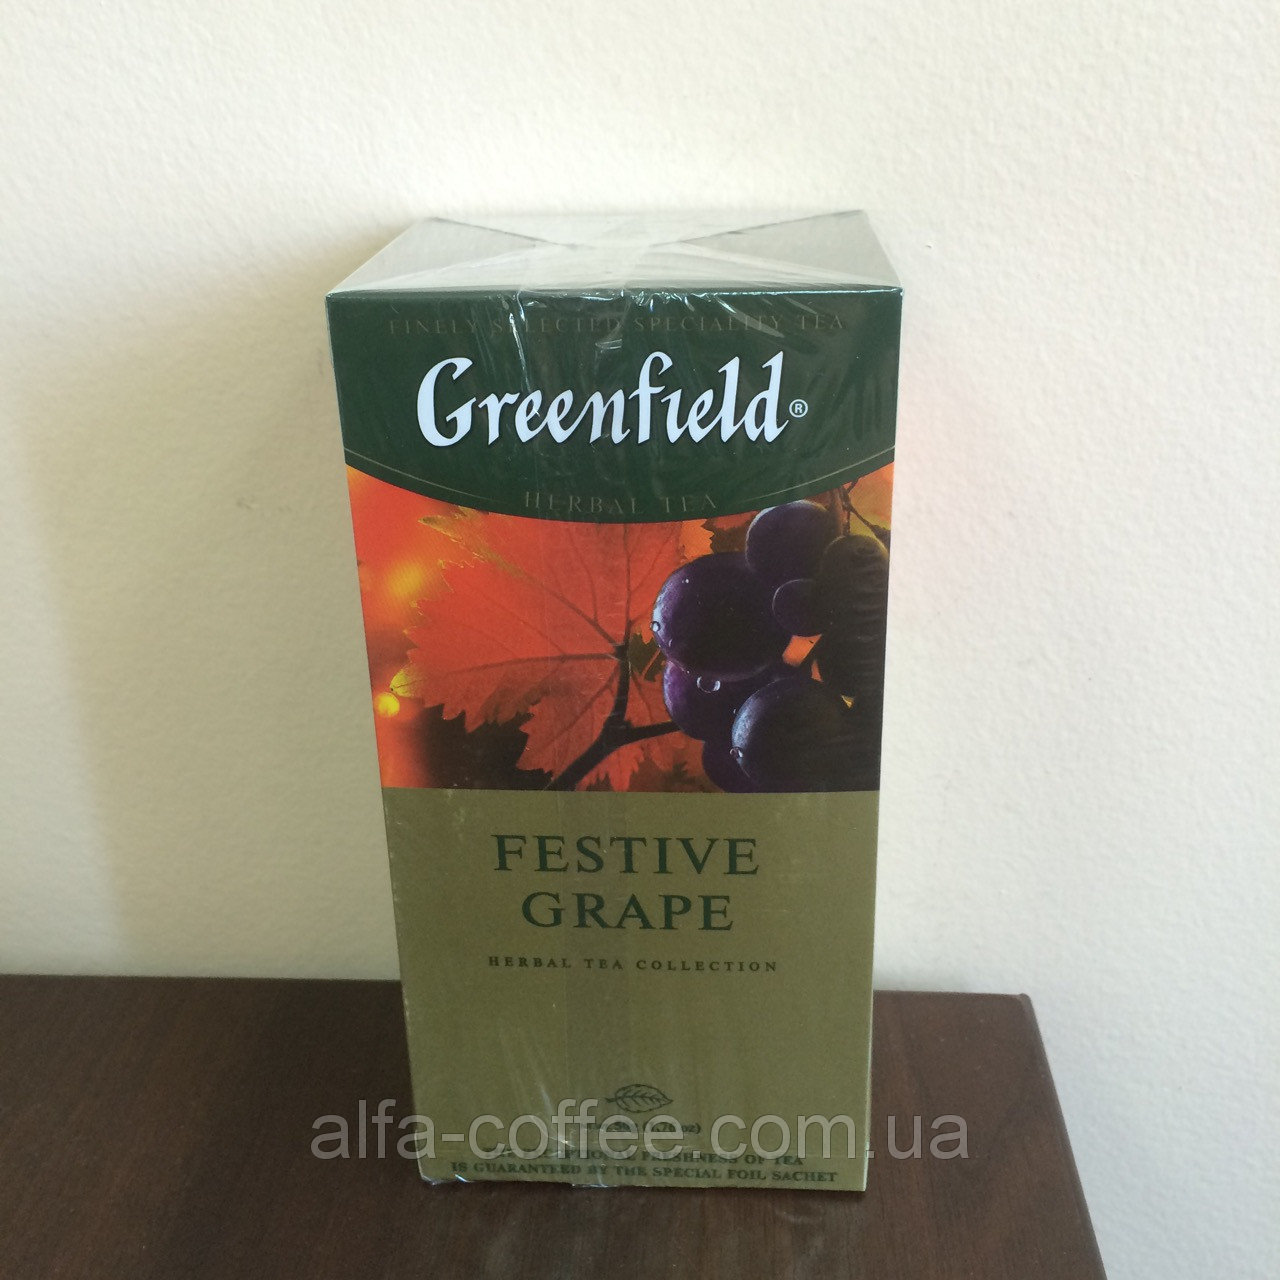 Гринфилд виноград. Гринфилд festive grape. Чай в пакетиках Greenfield / Гринфилд festive grape (25 пак). Festive grape чай. Чай Гринфилд зеленый 25 пакетиков.